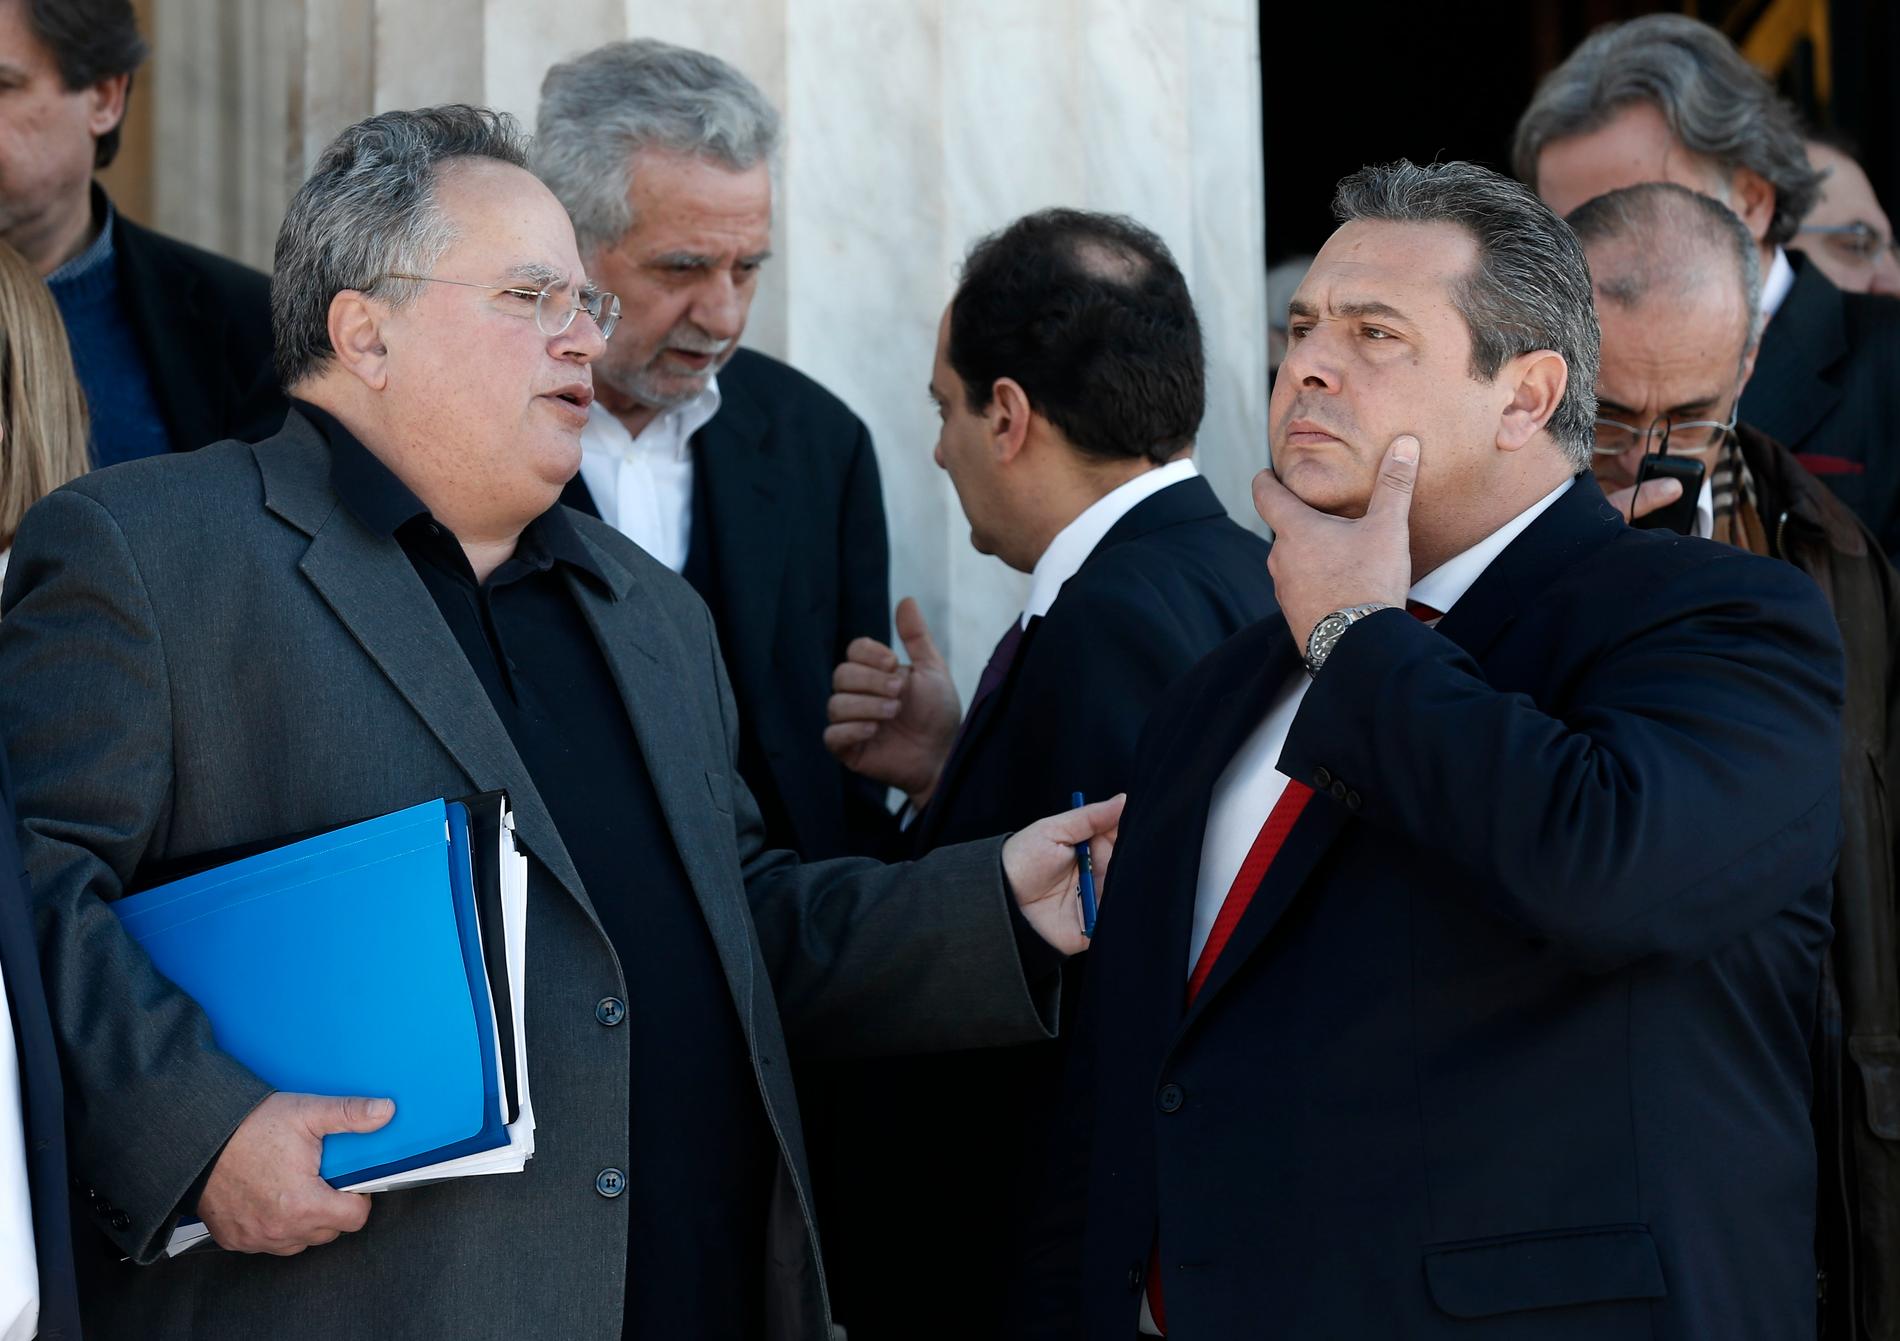 Greklands utrikesminister Nikos Kotzias, till vänster, i samspråk med försvarsminister Panos Kammenos utanför parlamentet i Aten 2015. Arkivbild.